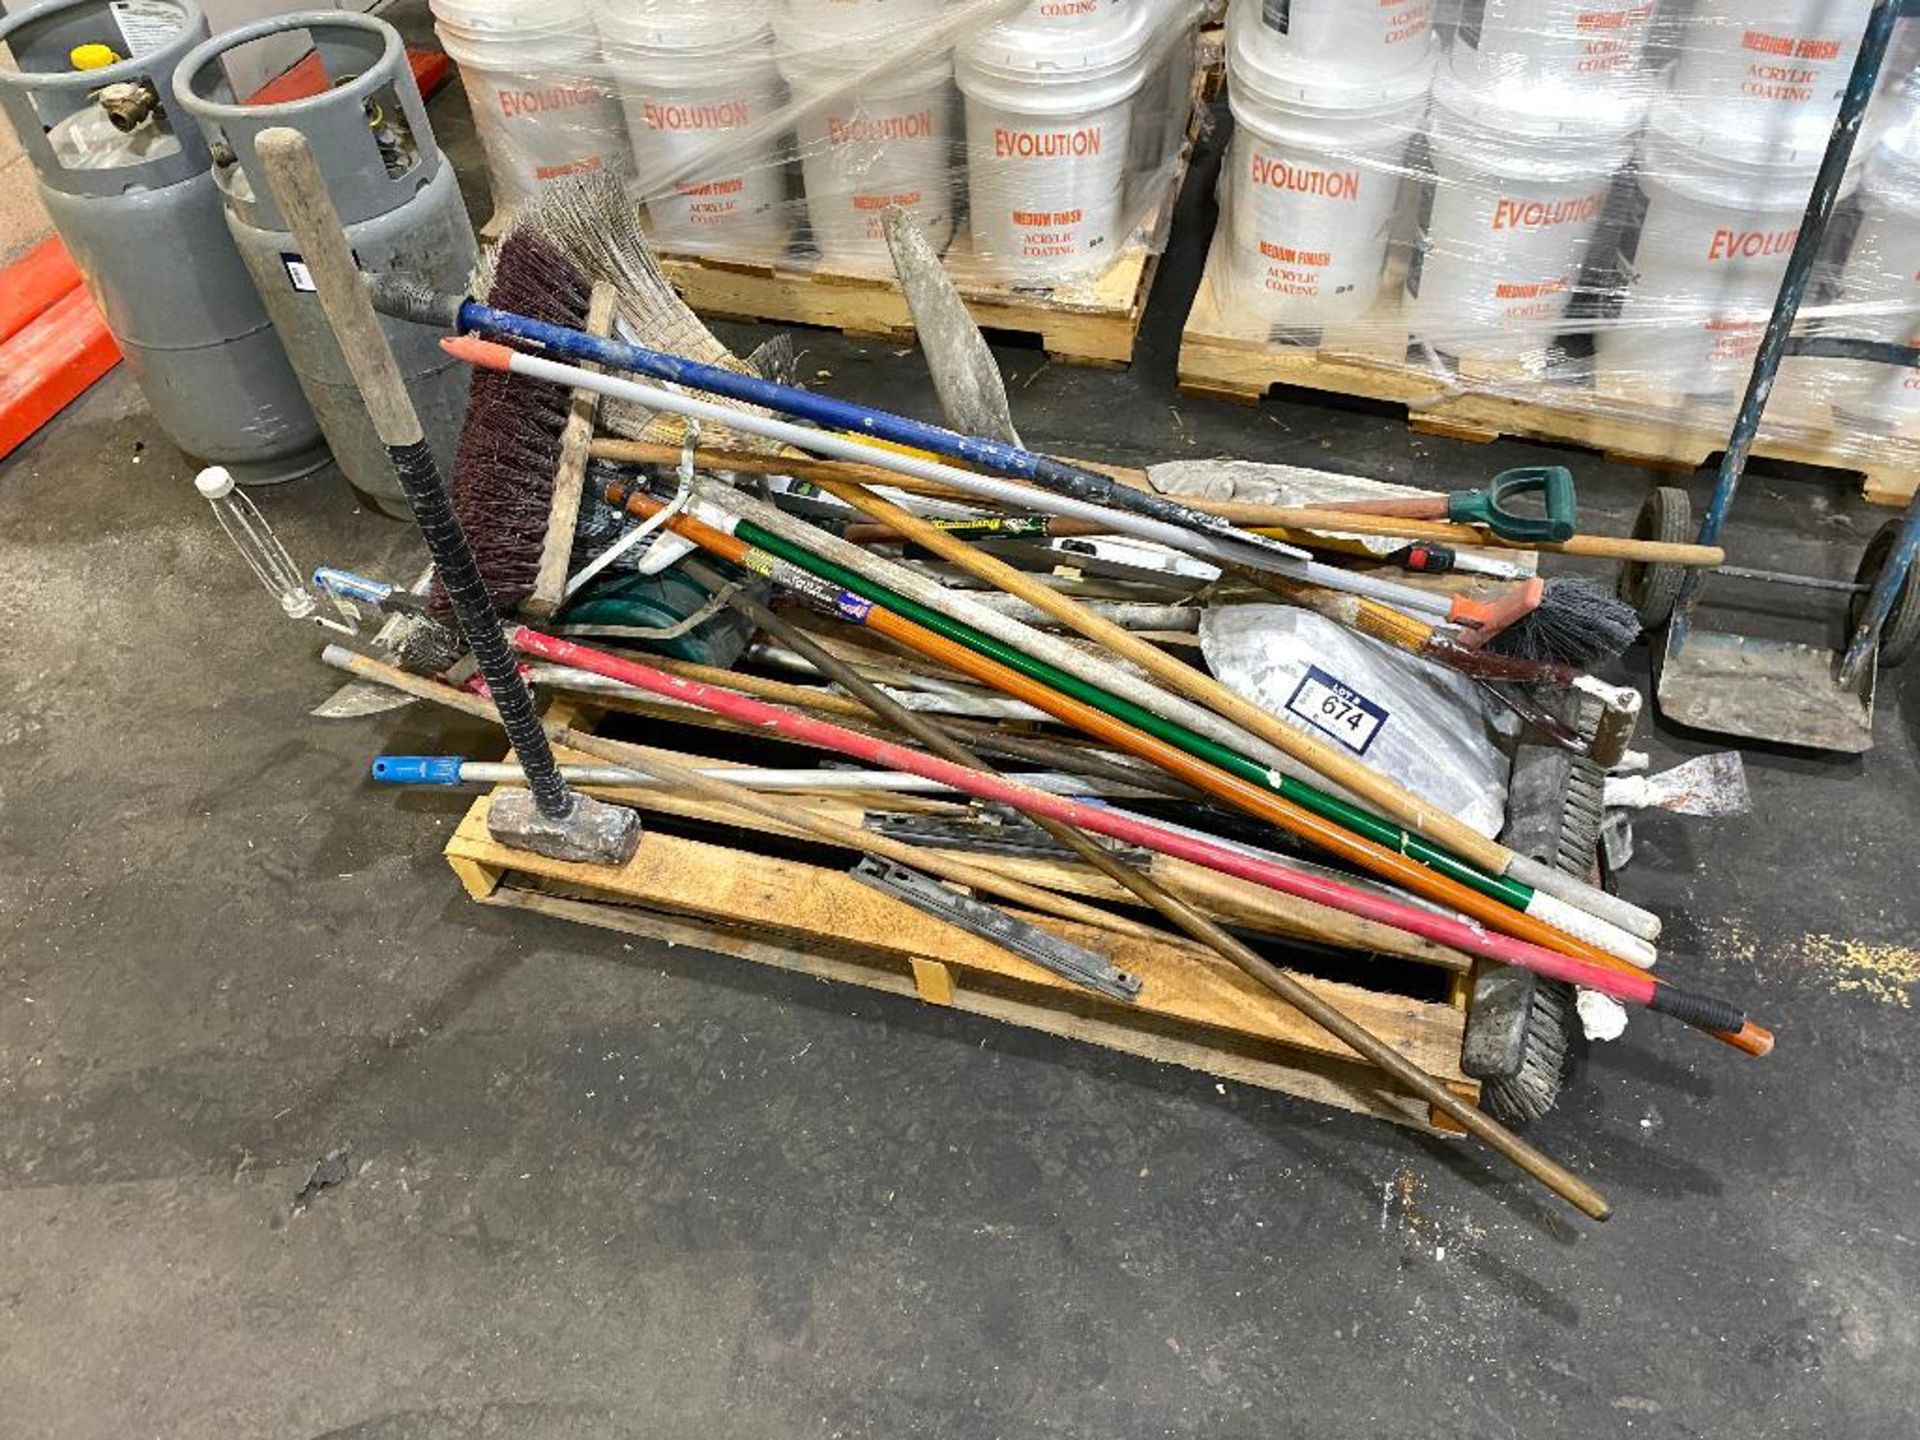 Pallet of Asst. Brooms, Shovels, Level, Paint Rollers, etc.